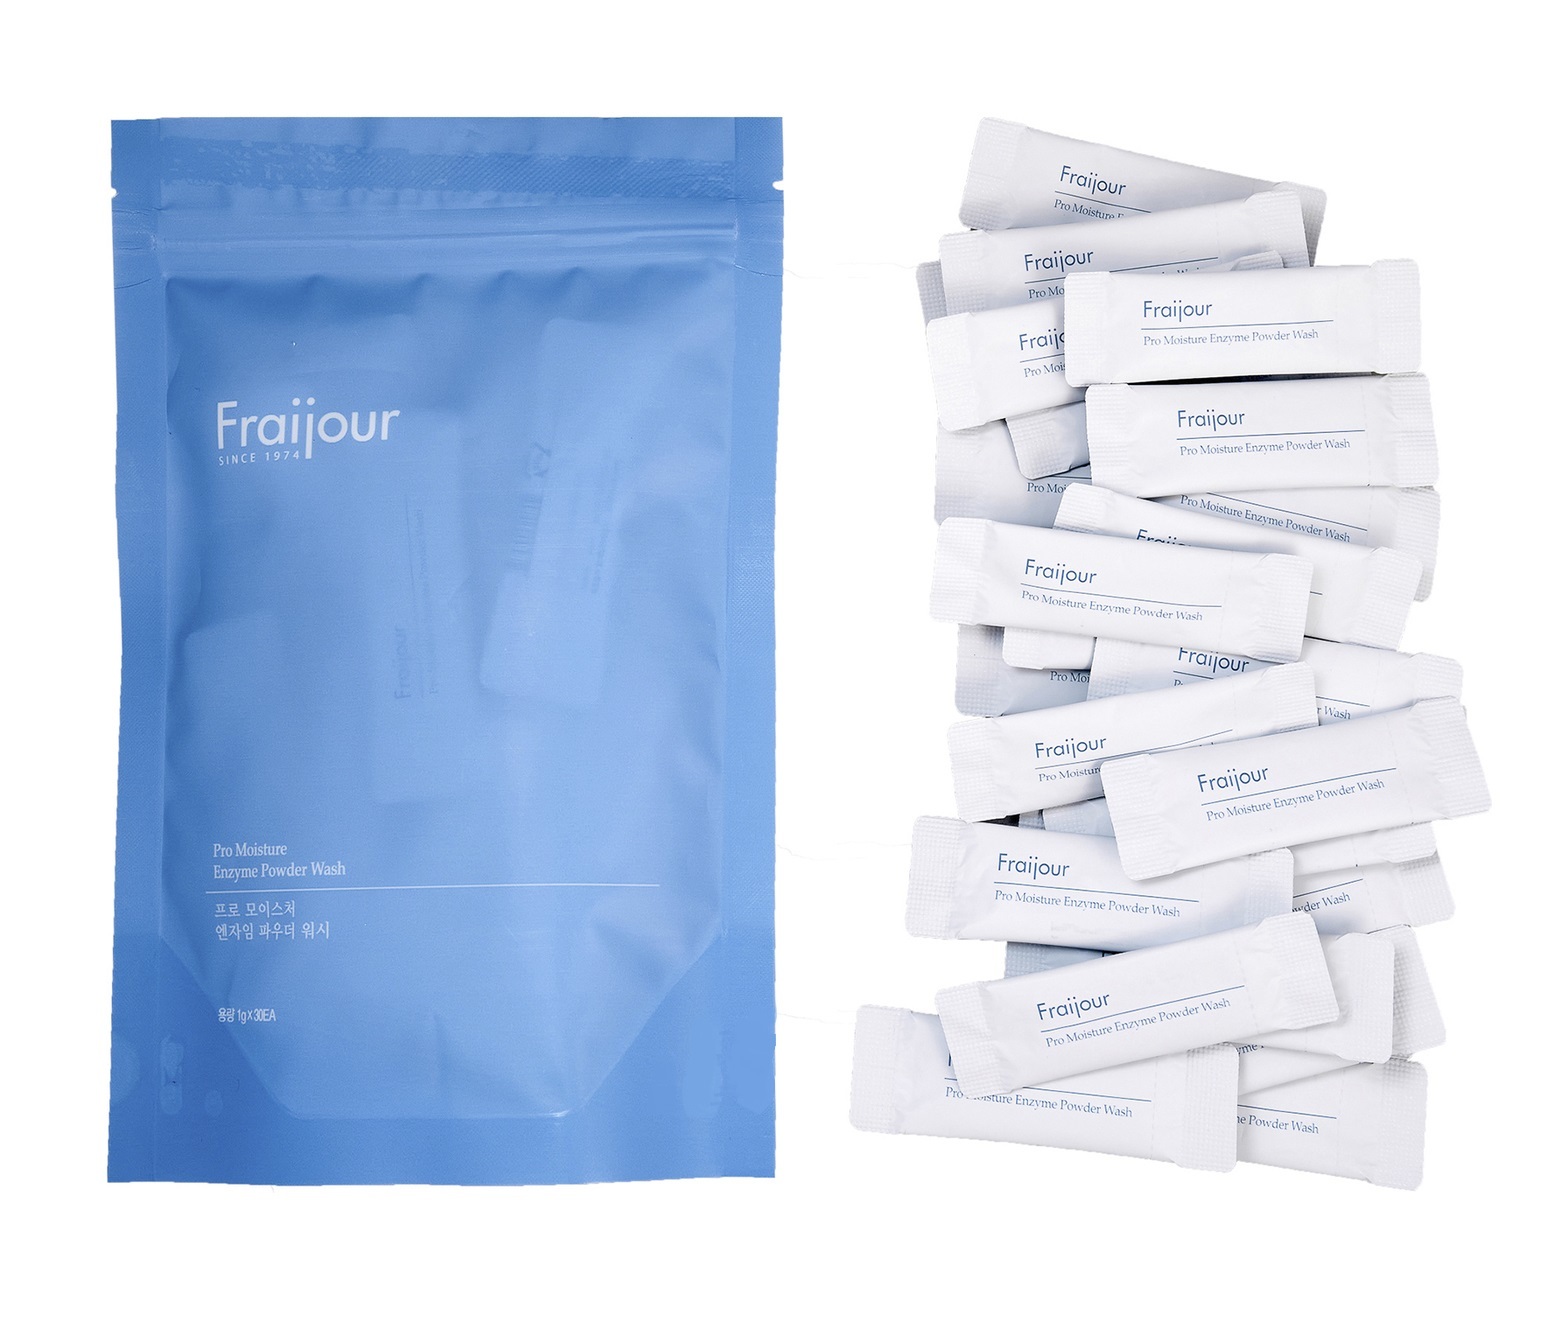 Пудра очищающая энзимная Pro moisture enzyme powder wash, 30шт*1г Fraijour wish formula пудра для лица энзимная очищающая для умывания